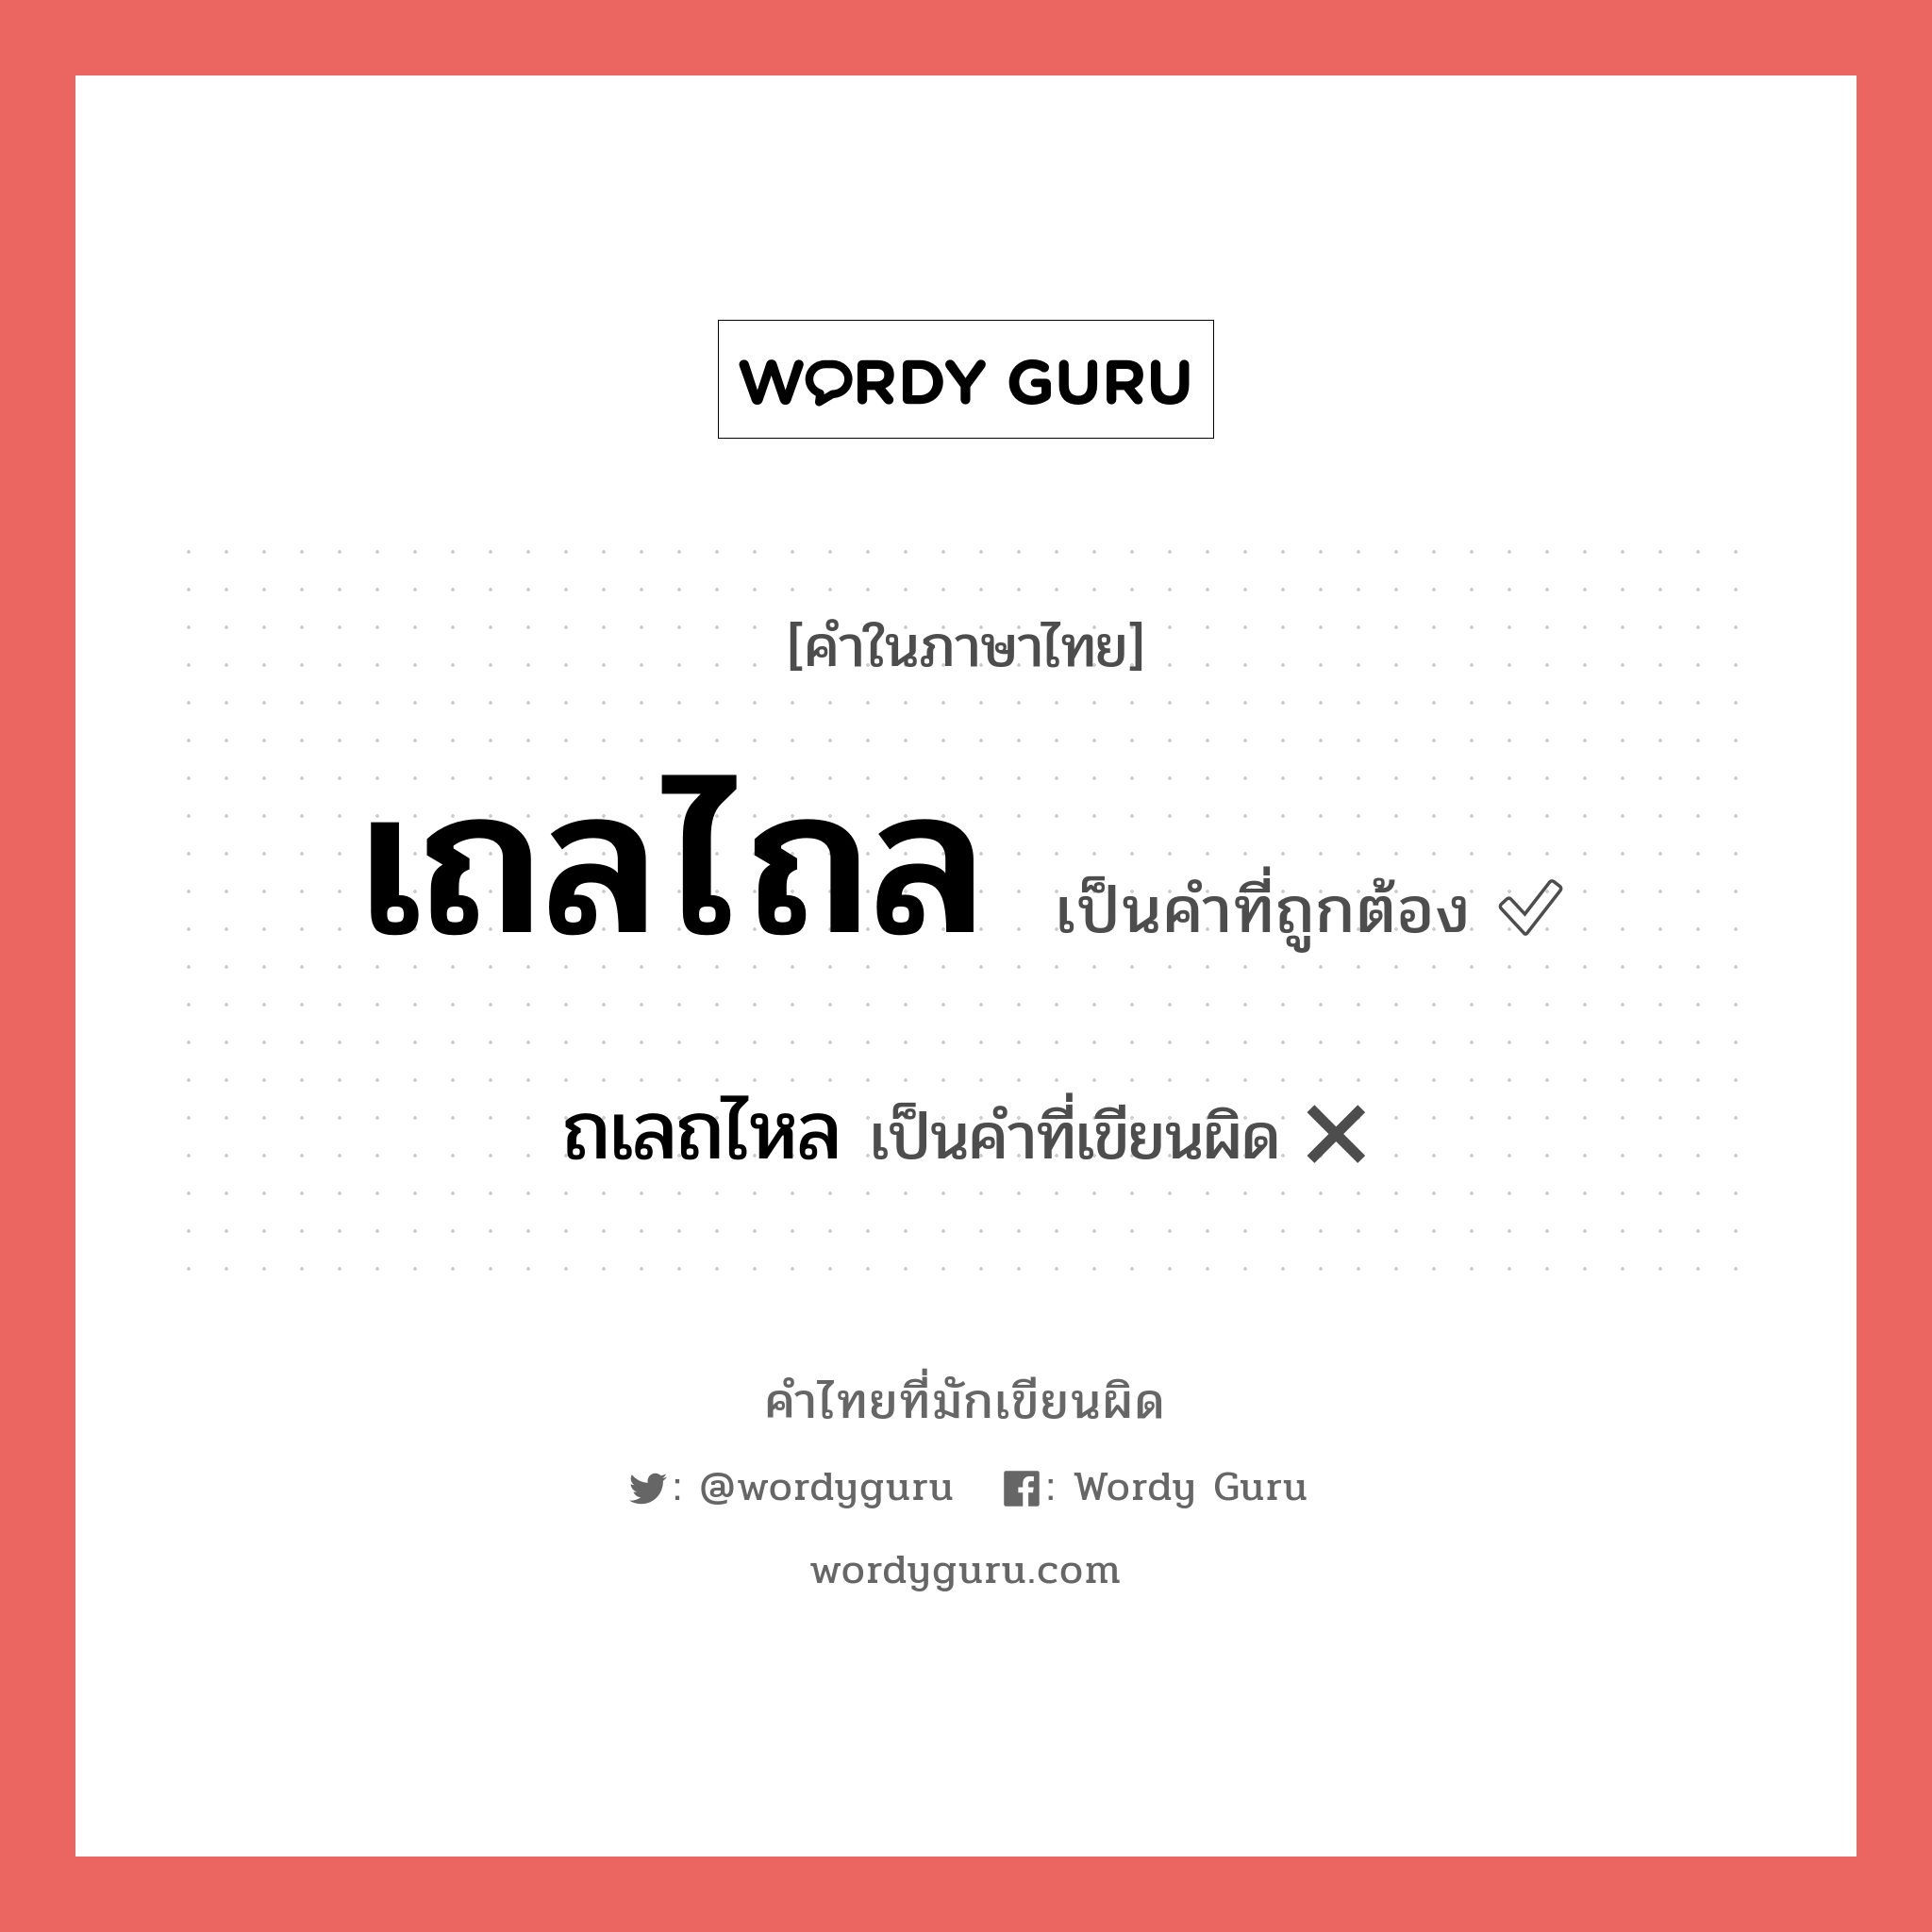 ถเลถไหล หรือ เถลไถล คำไหนเขียนถูก?, คำในภาษาไทยที่มักเขียนผิด ถเลถไหล คำที่ผิด ❌ เถลไถล